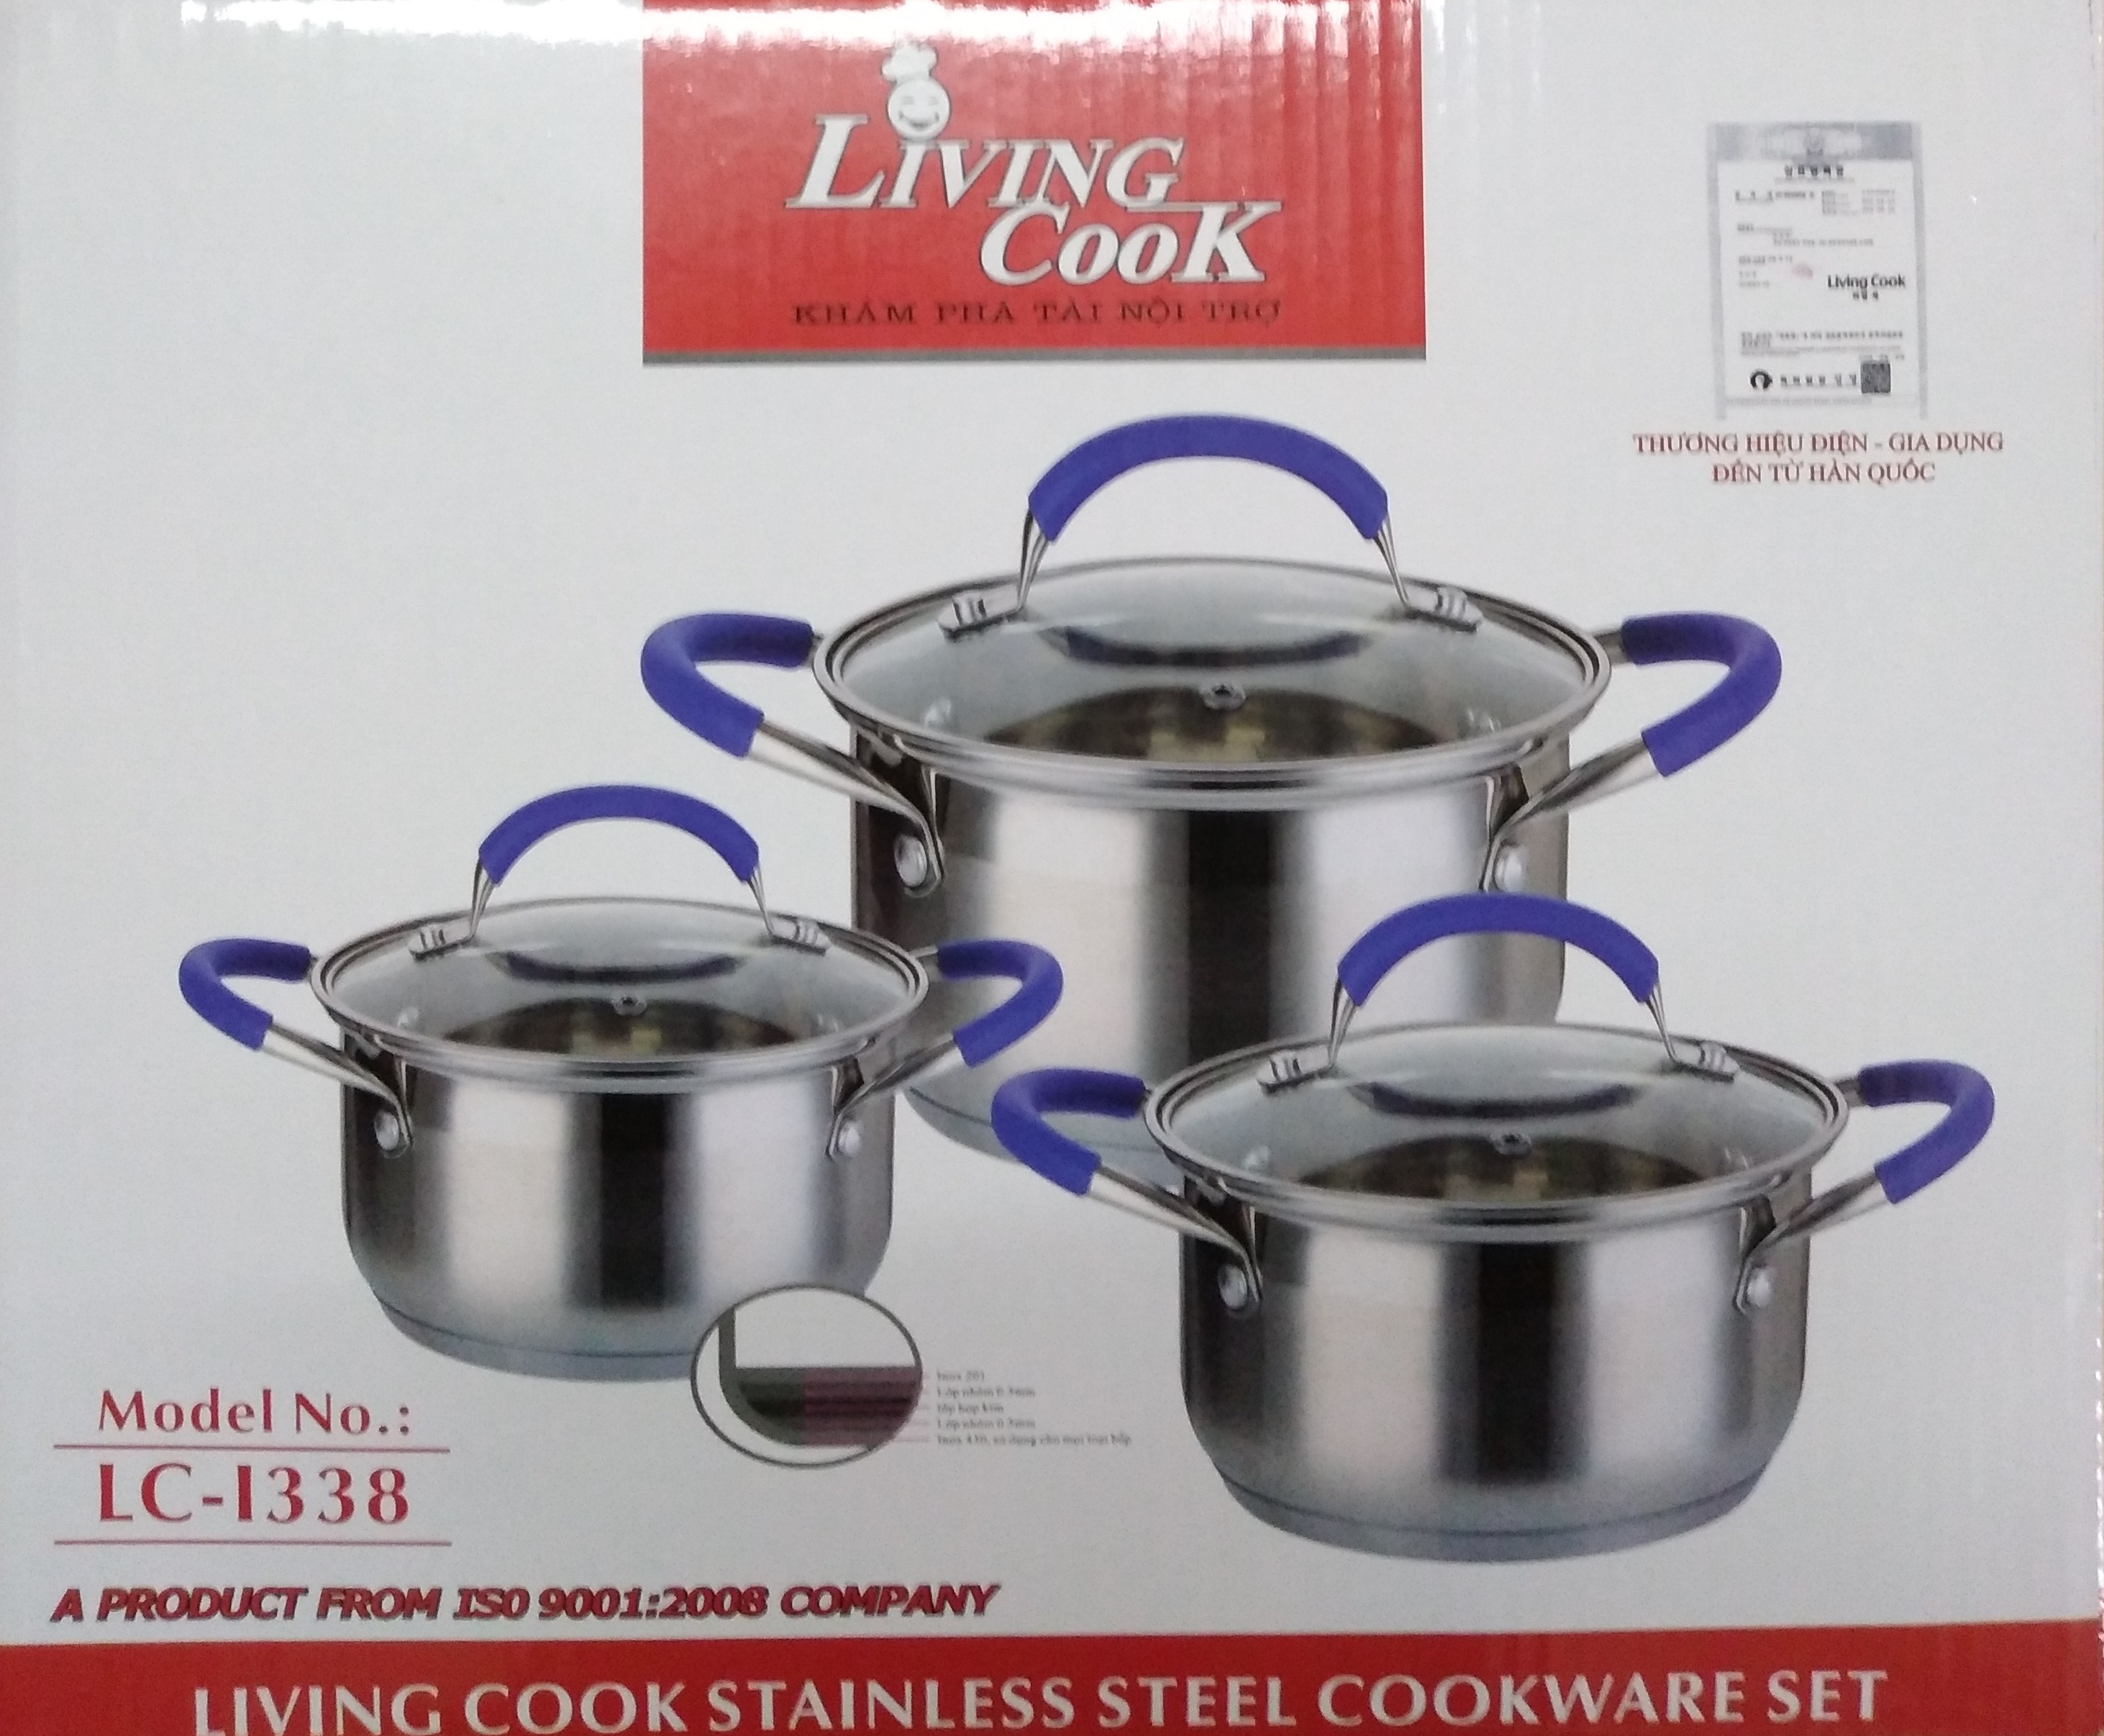 Bộ Nồi Inox 5 Đáy LivingCook LC-I338 Dùng Mọi Bếp (16-20-24 cm) - Hàng Chính Hãng